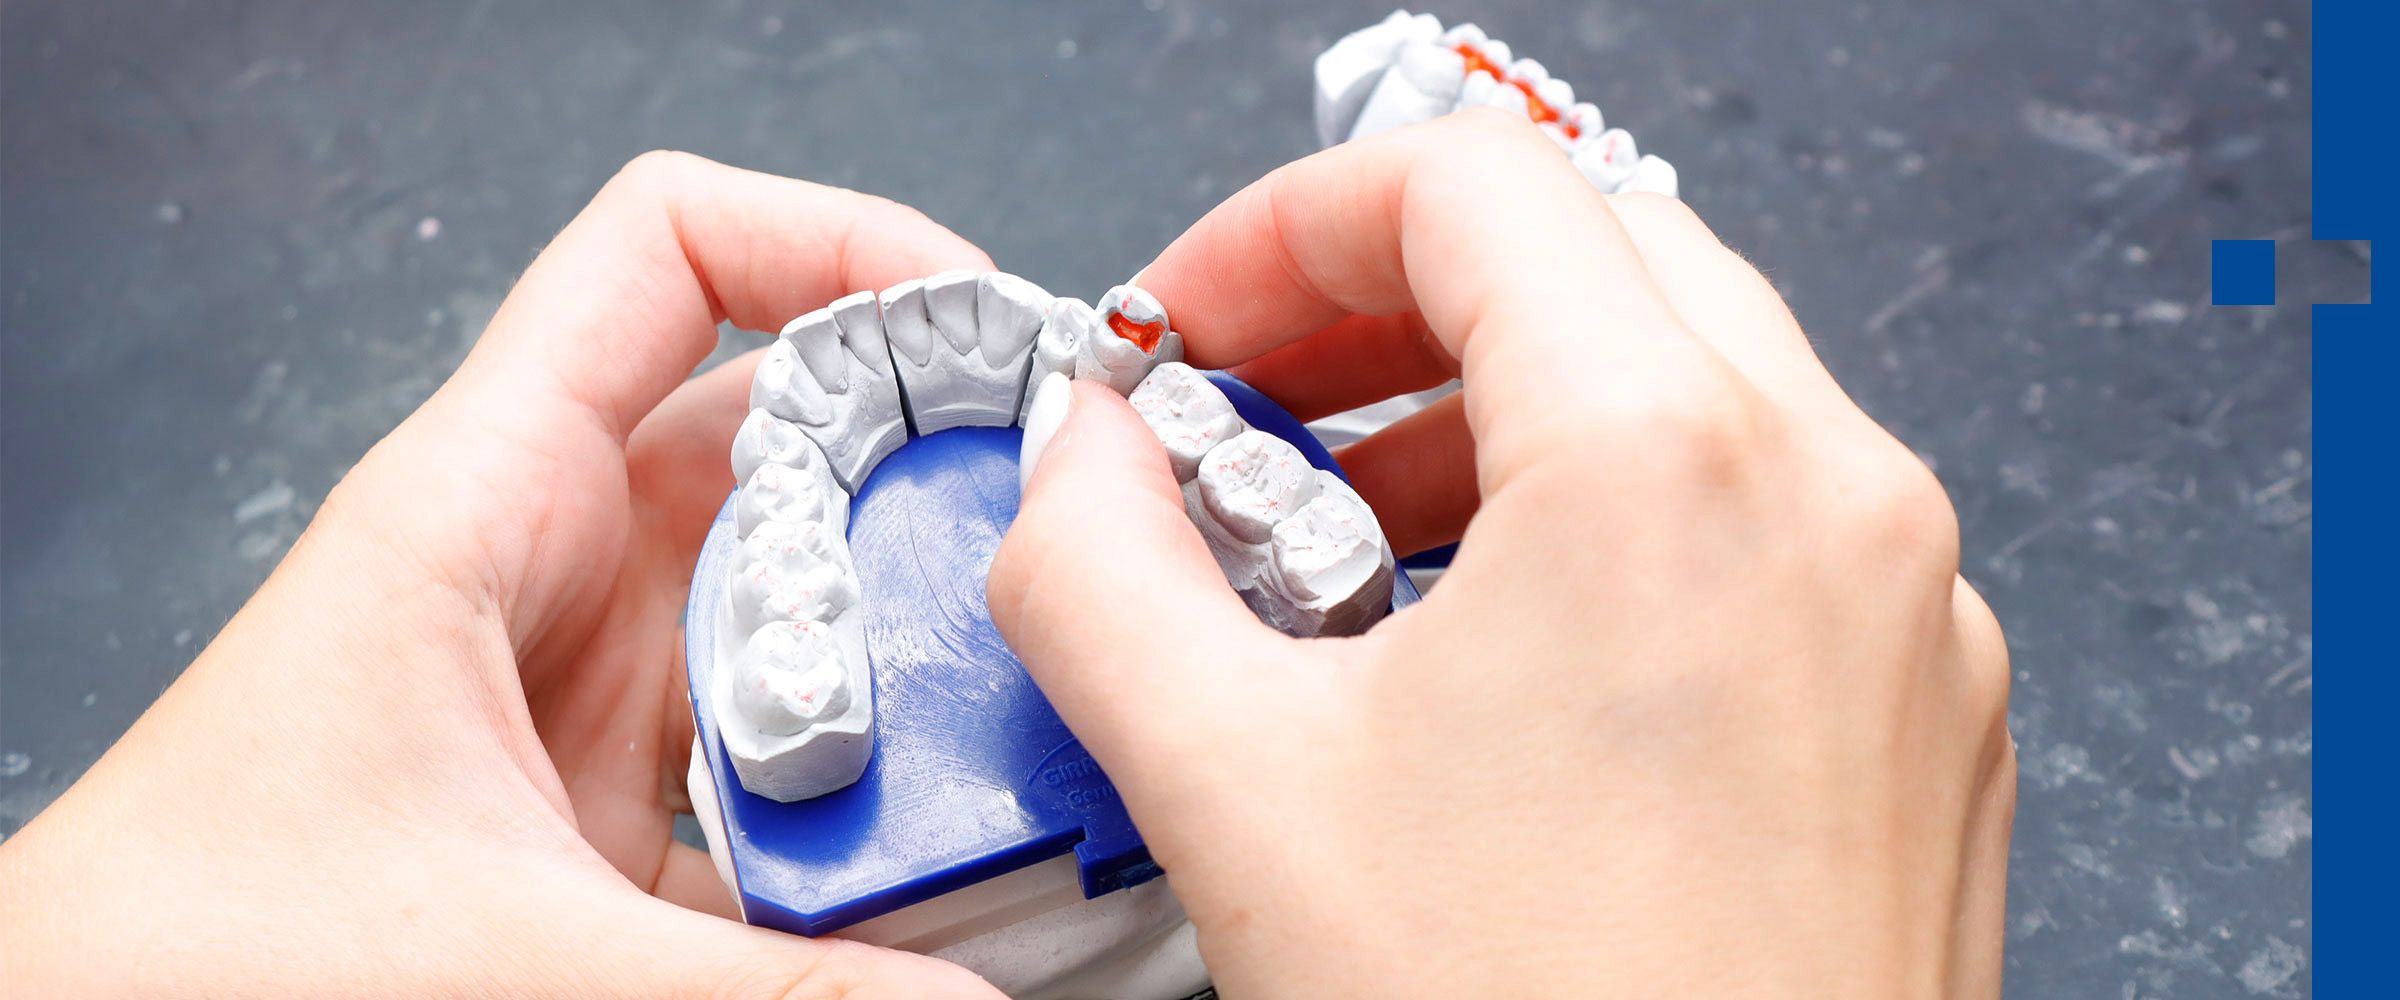 Hände bearbeiten ein Kiefermodell - Zahnersatz wird auf Platz getestet